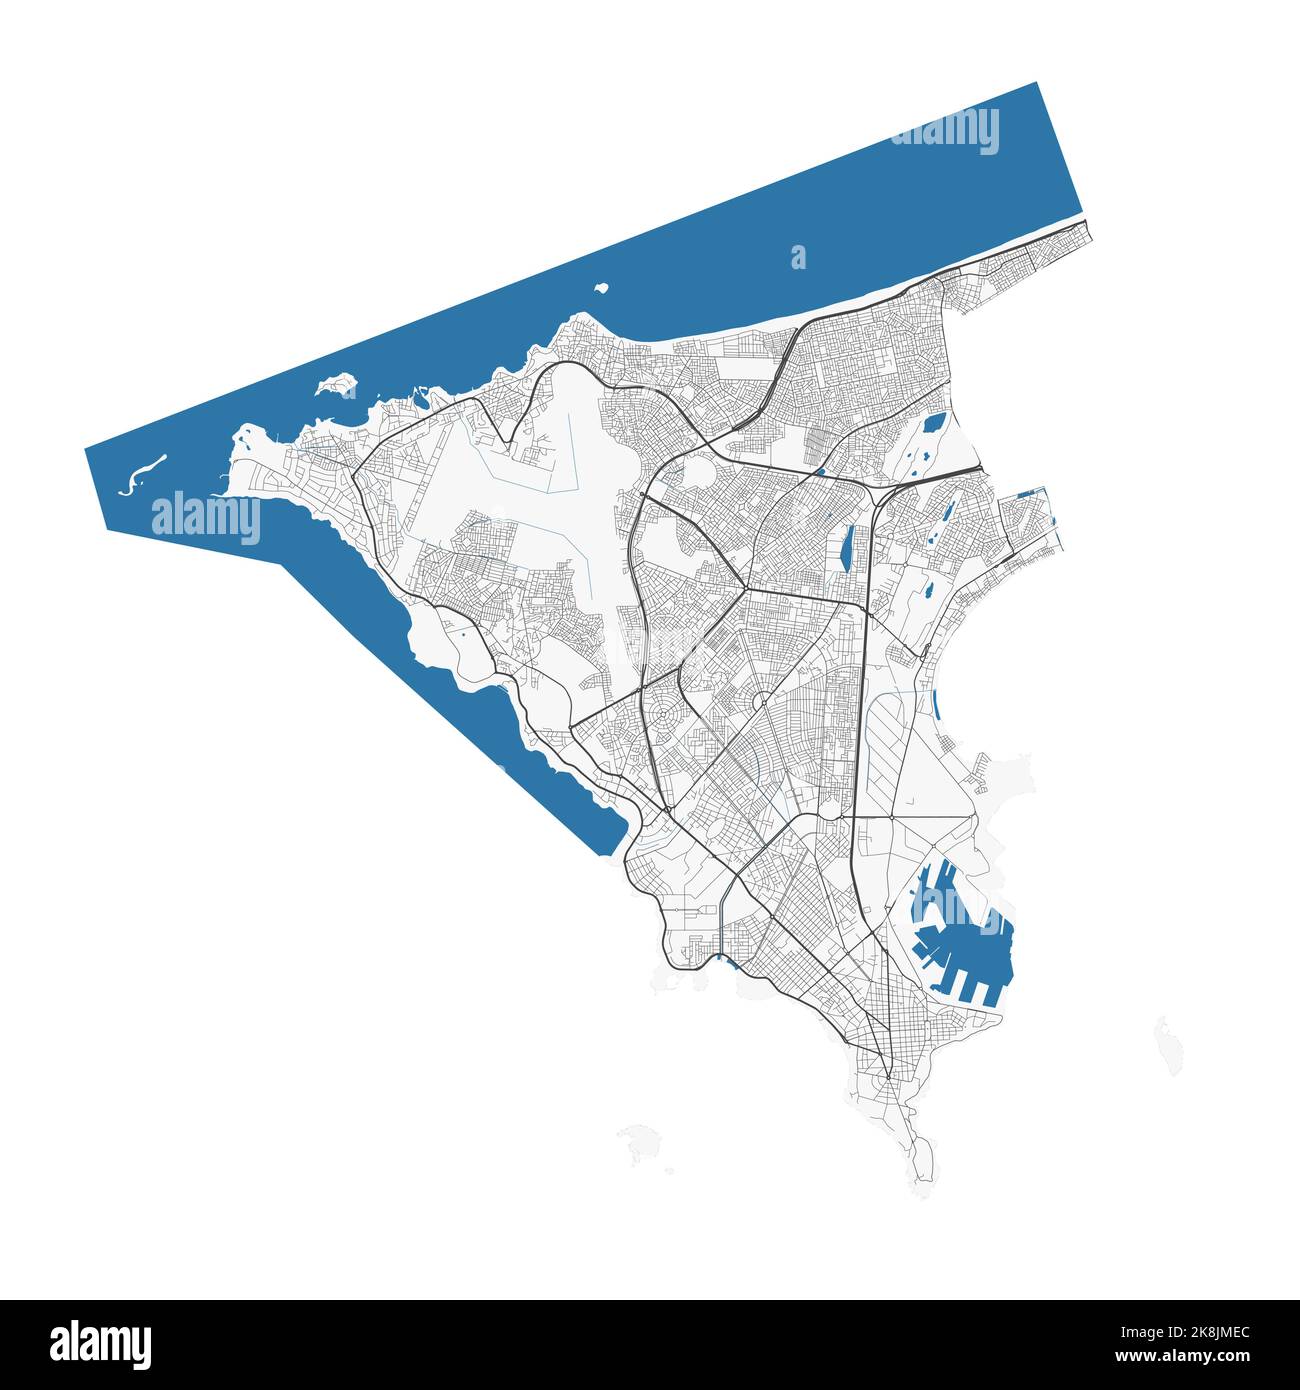 Carte de Dakar. Carte détaillée du quartier administratif de Dakar. Panorama urbain. Illustration vectorielle libre de droits. Carte routière avec autoroutes, rivières. Illustration de Vecteur